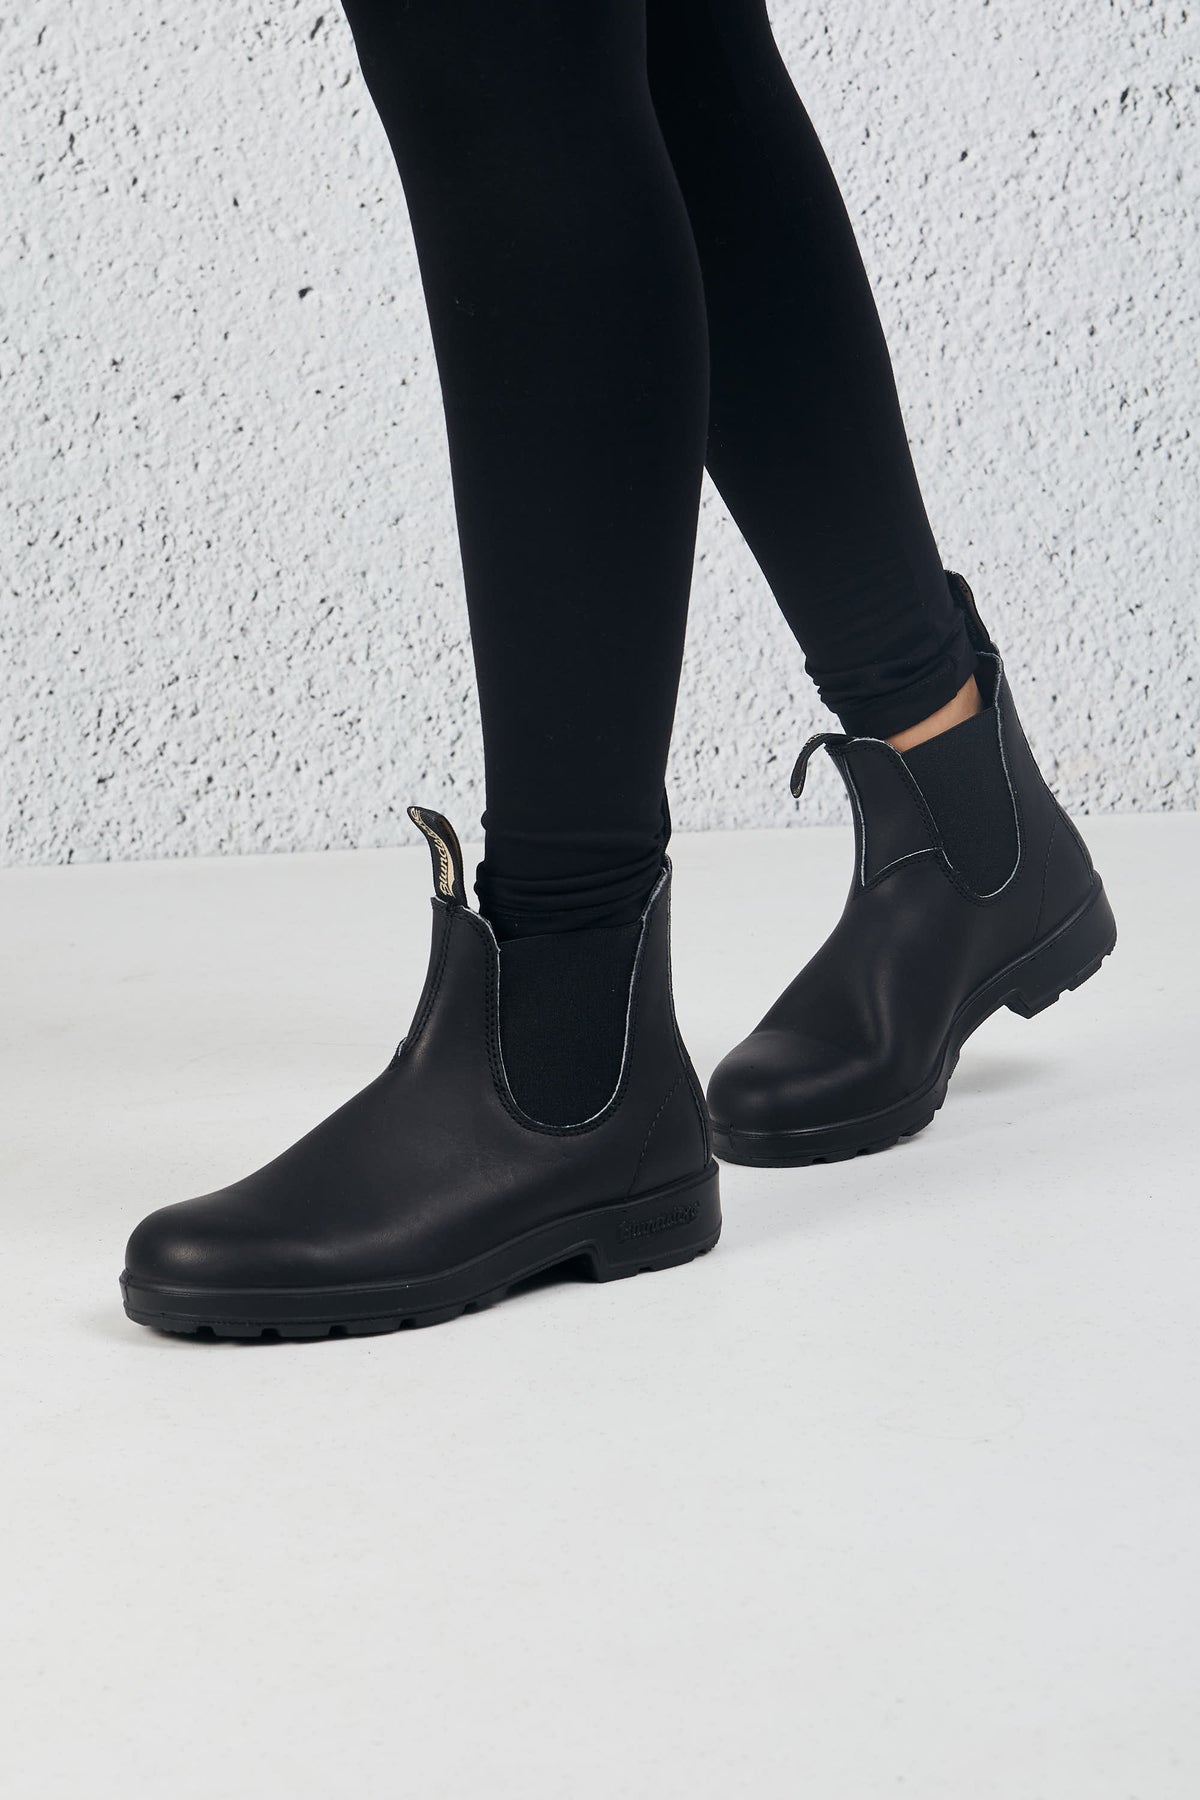 Blundstone Boot Black Leather Nero Donna - 3